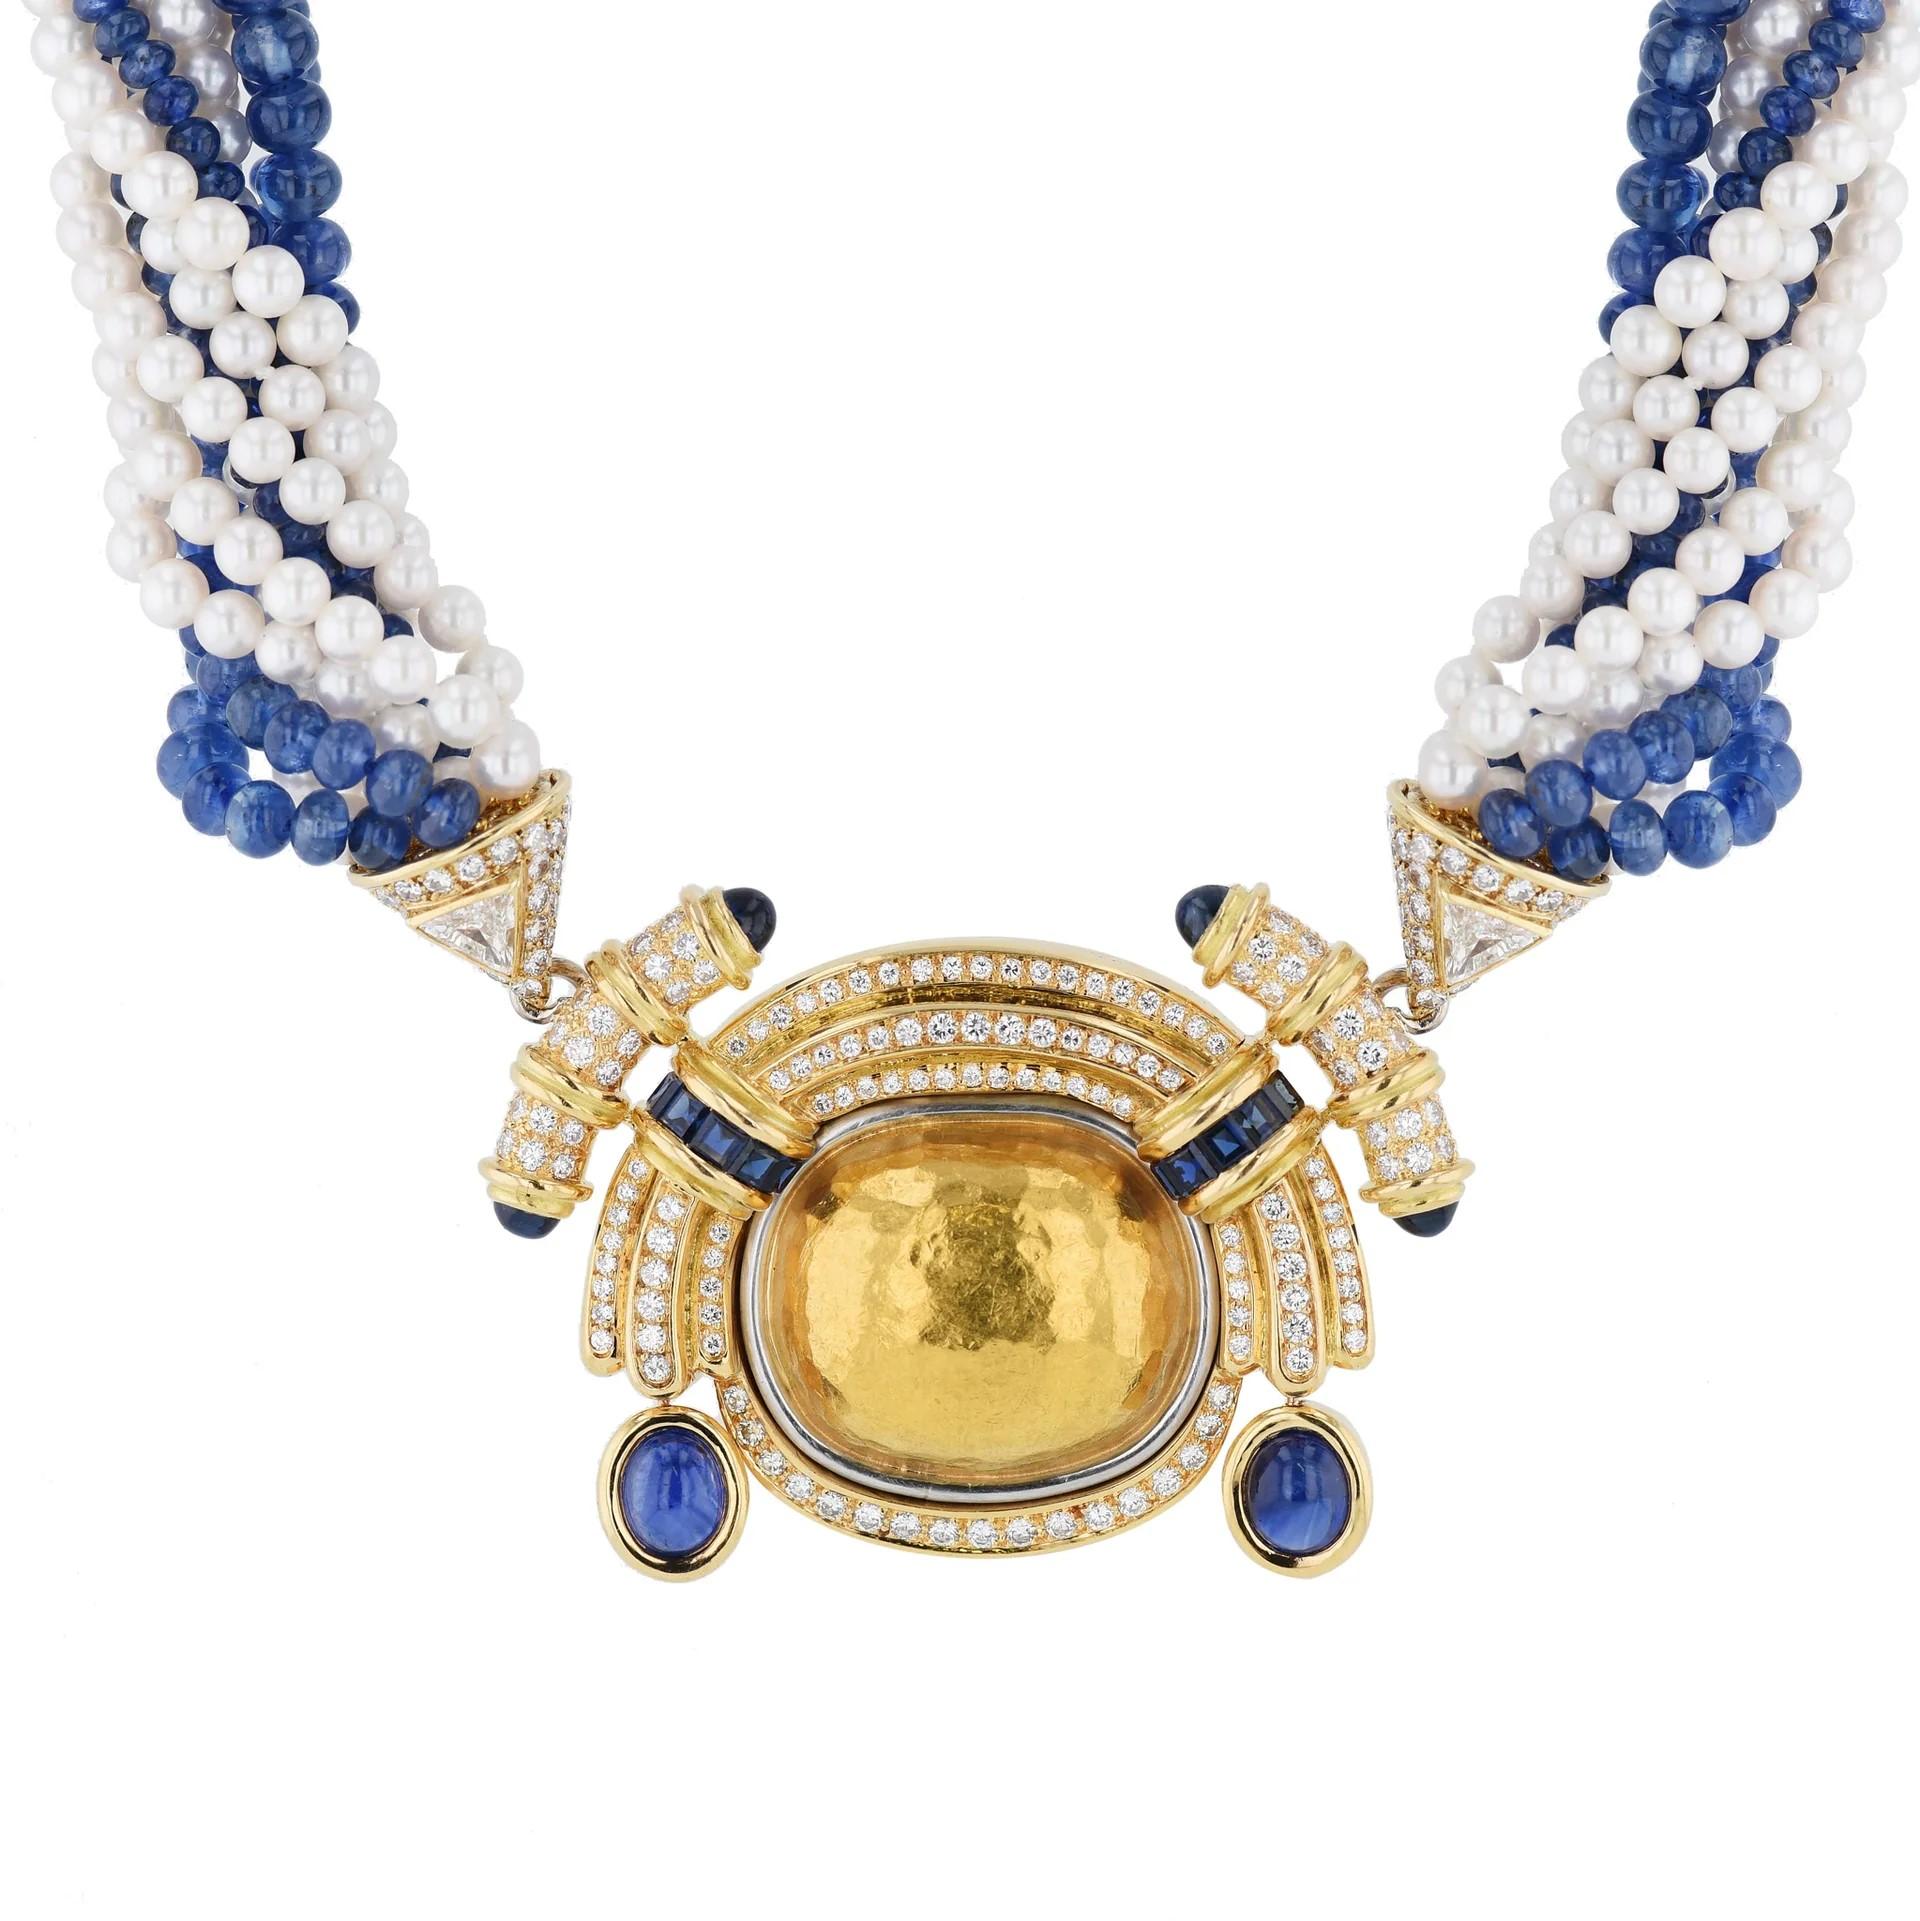 Taille brillant Chaumet, collier français de succession en or jaune avec diamants, saphirs bleus et perles blanches en vente